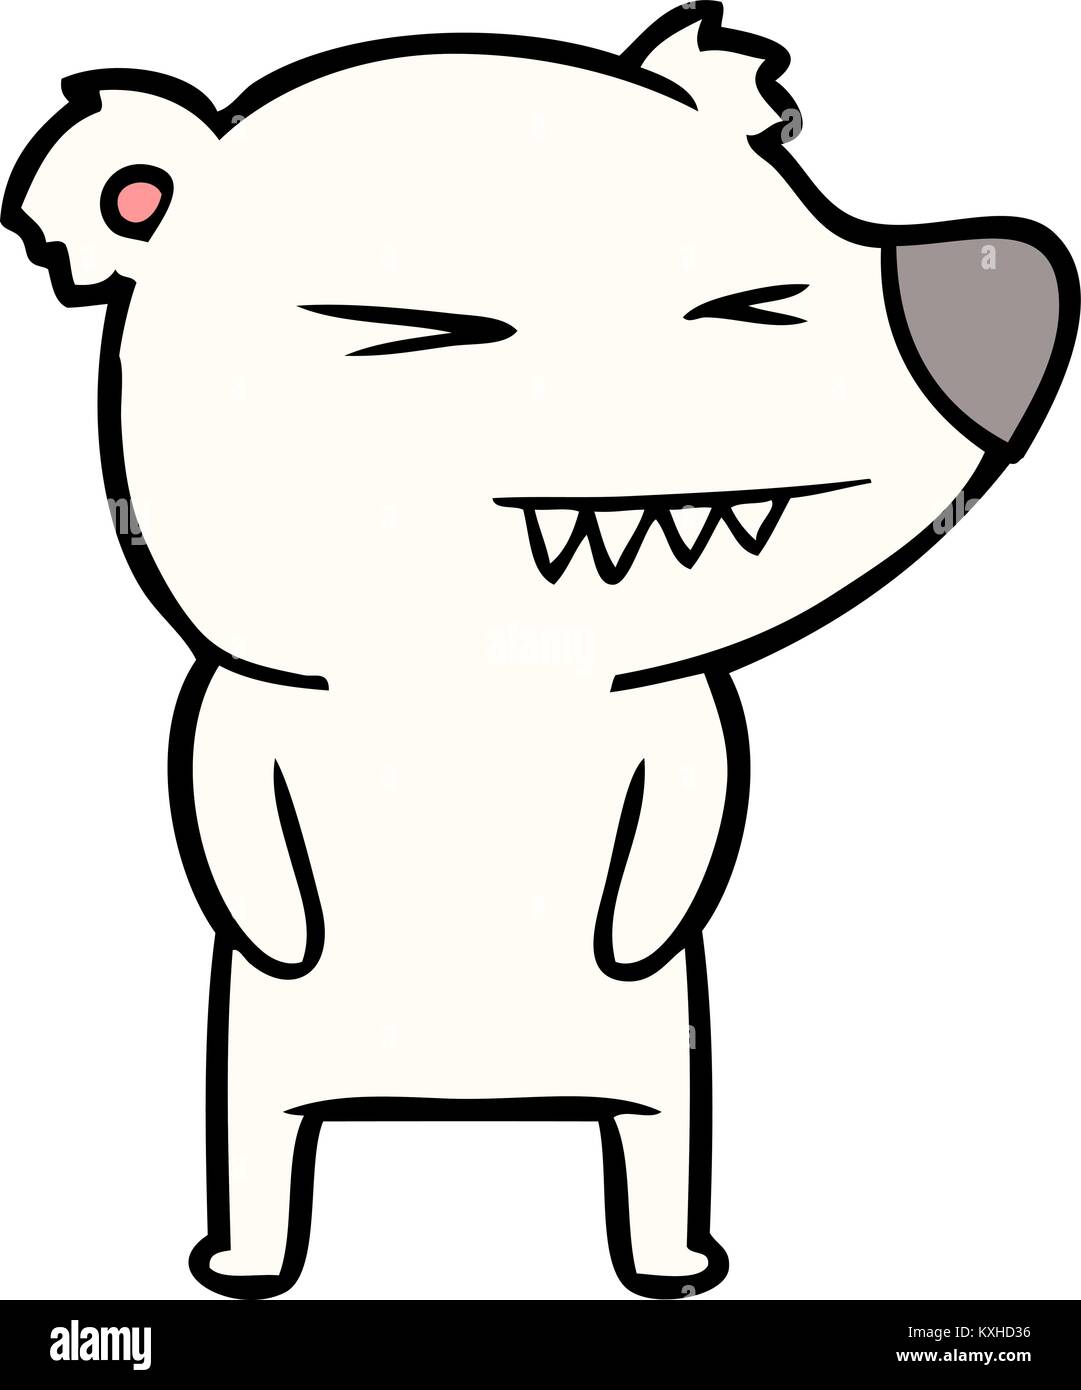 angry polar bear cartoon Stock Vector Image & Art - Alamy